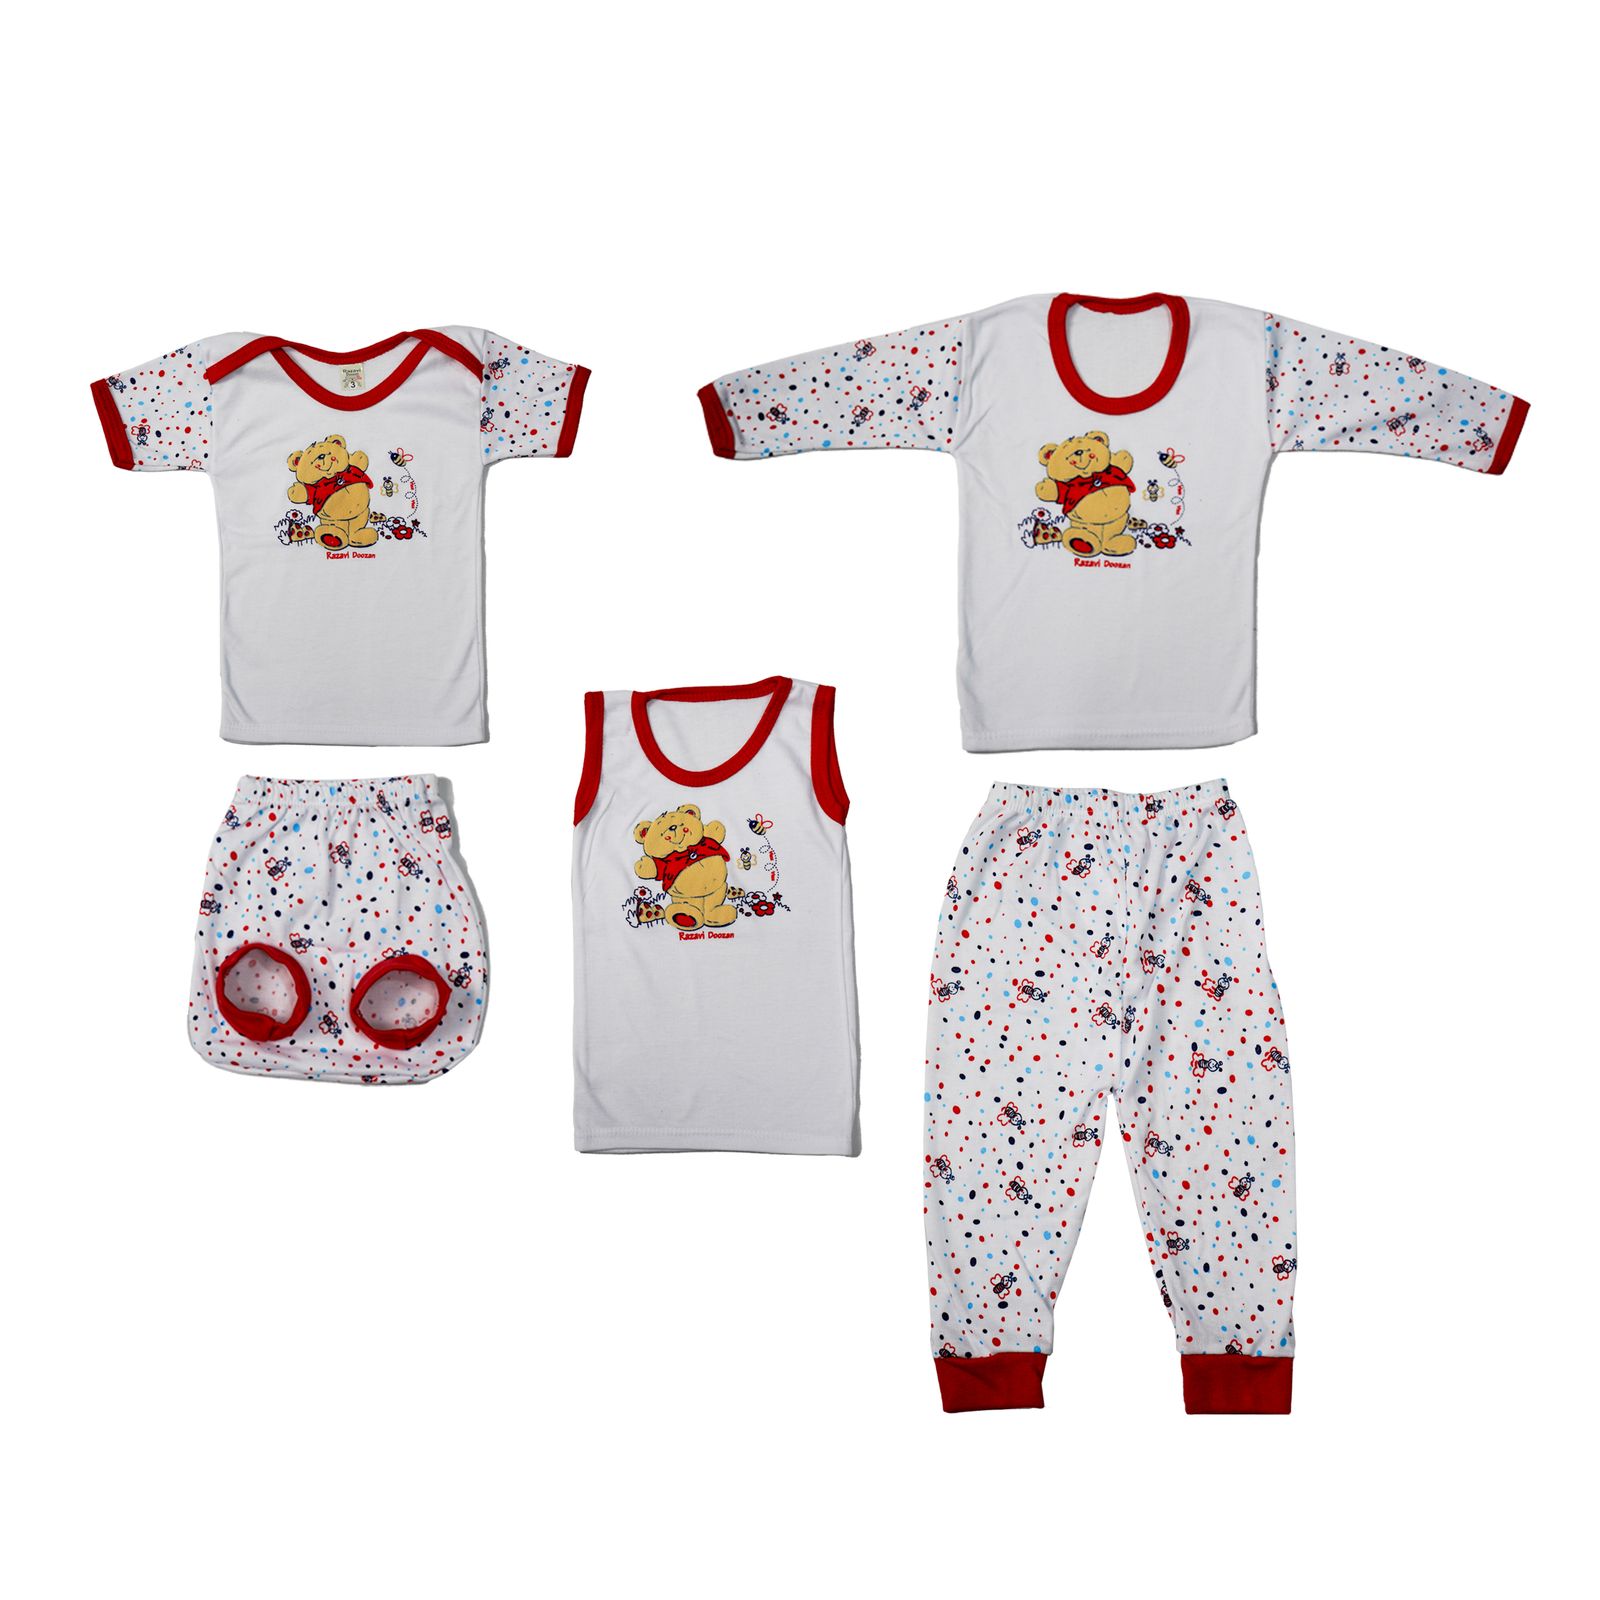 ست 5 تکه لباس نوزادی مدل خرس برجسته کد 1 رنگ قرمز -  - 2